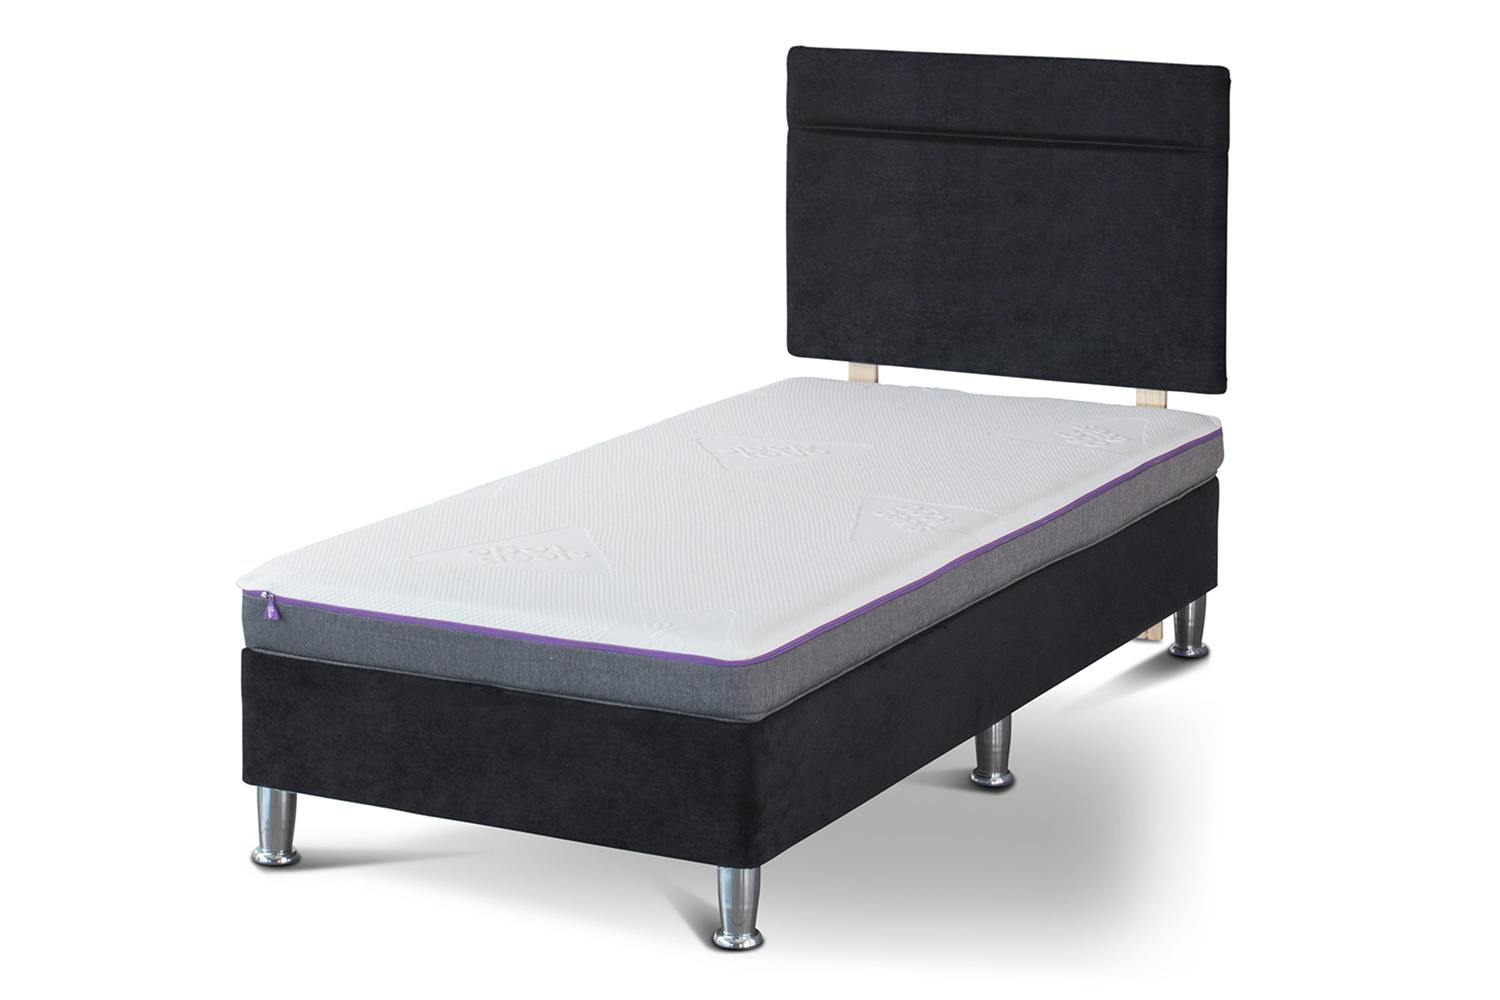 6ft x 3ft x 8 inch mattress